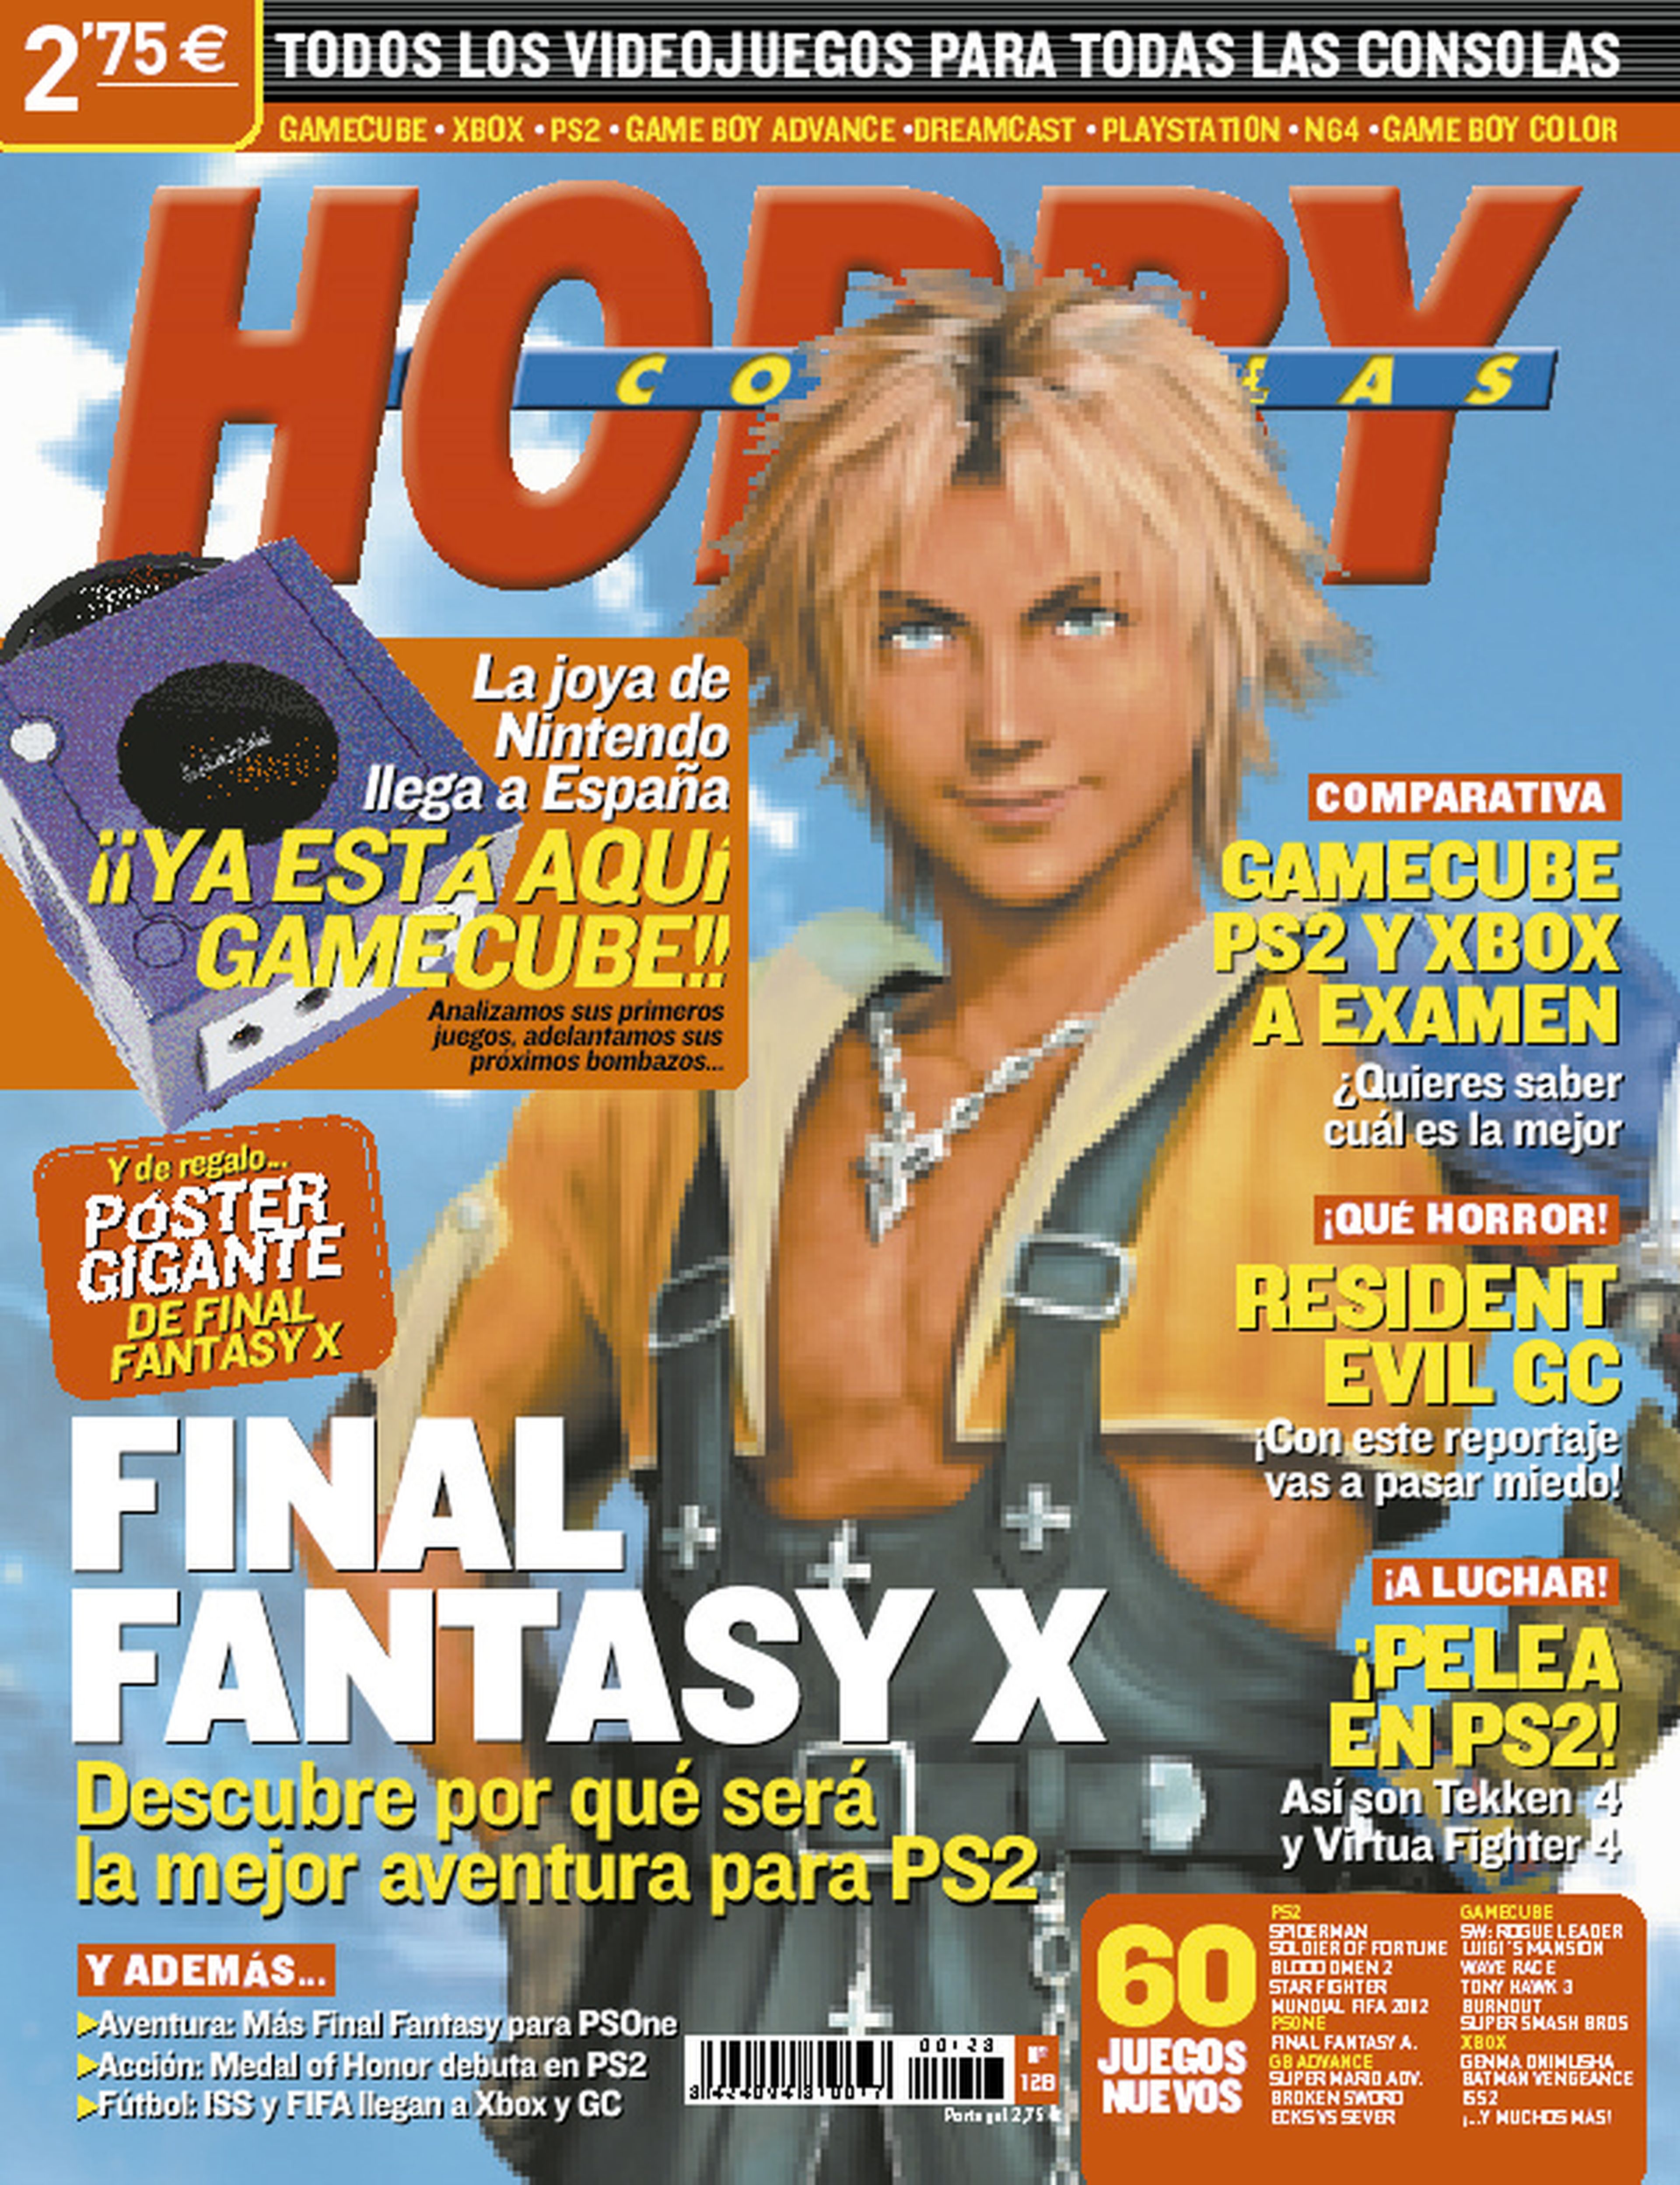 Prtada en Hobby Consolas a Final Fantasy X